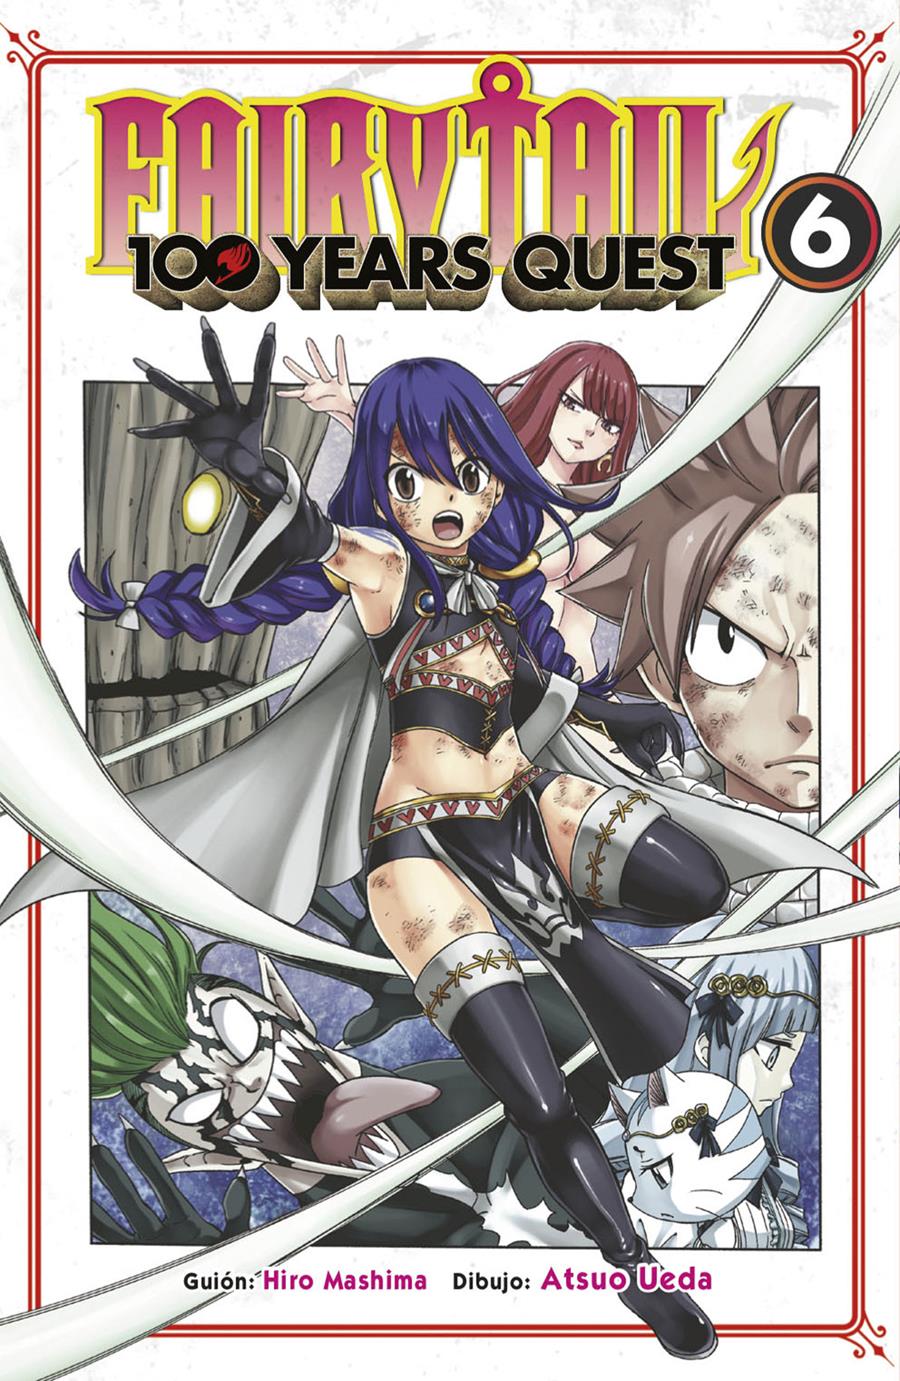 Fairy tail 100 years quest 06 | N0721-NOR31 | Hiro Mashima y Atsuo Ueda | Terra de Còmic - Tu tienda de cómics online especializada en cómics, manga y merchandising